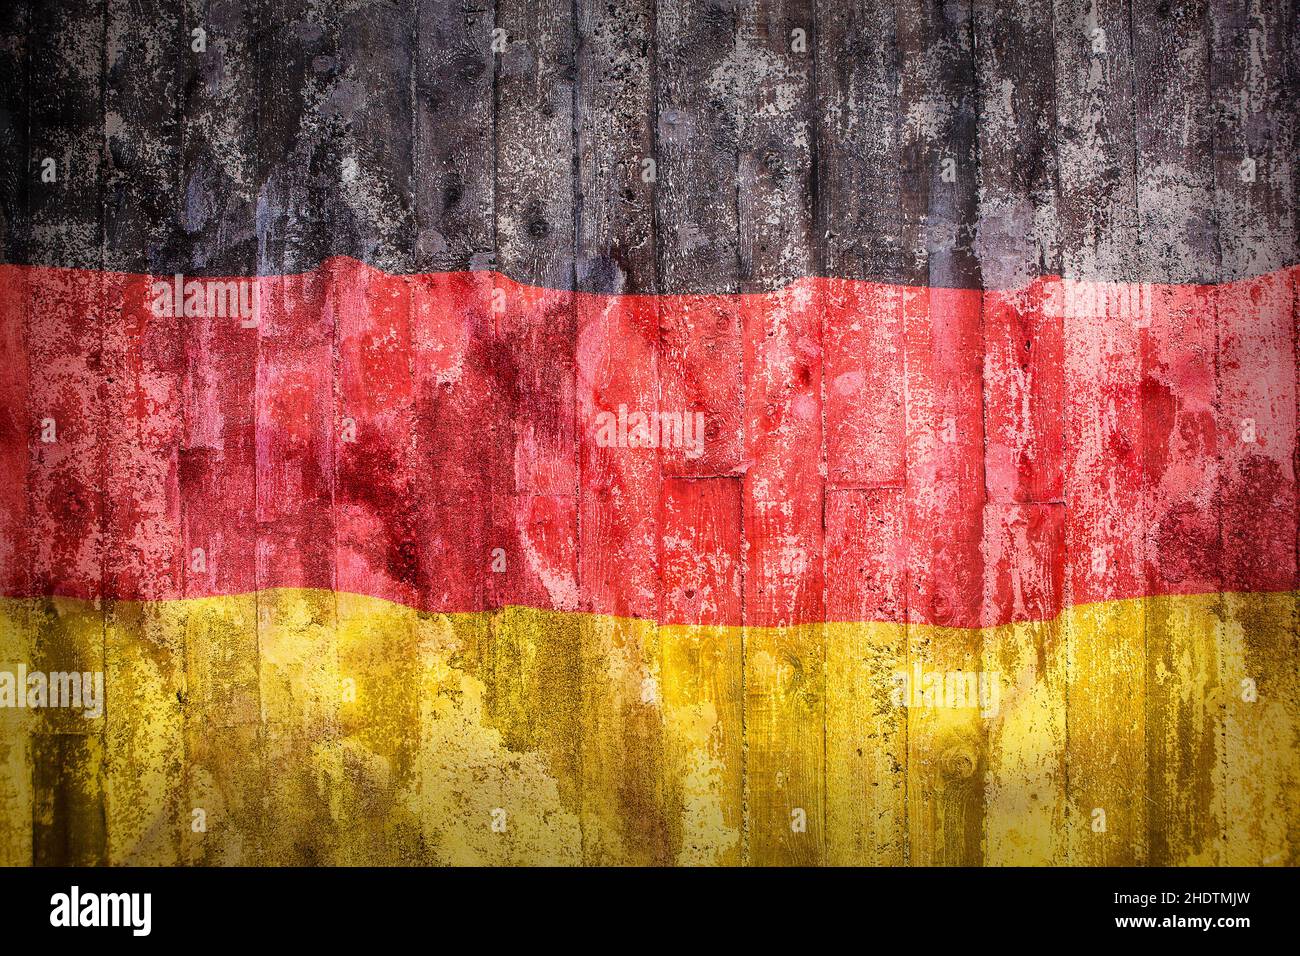 germany, german flag, germanies, german flags Stock Photo